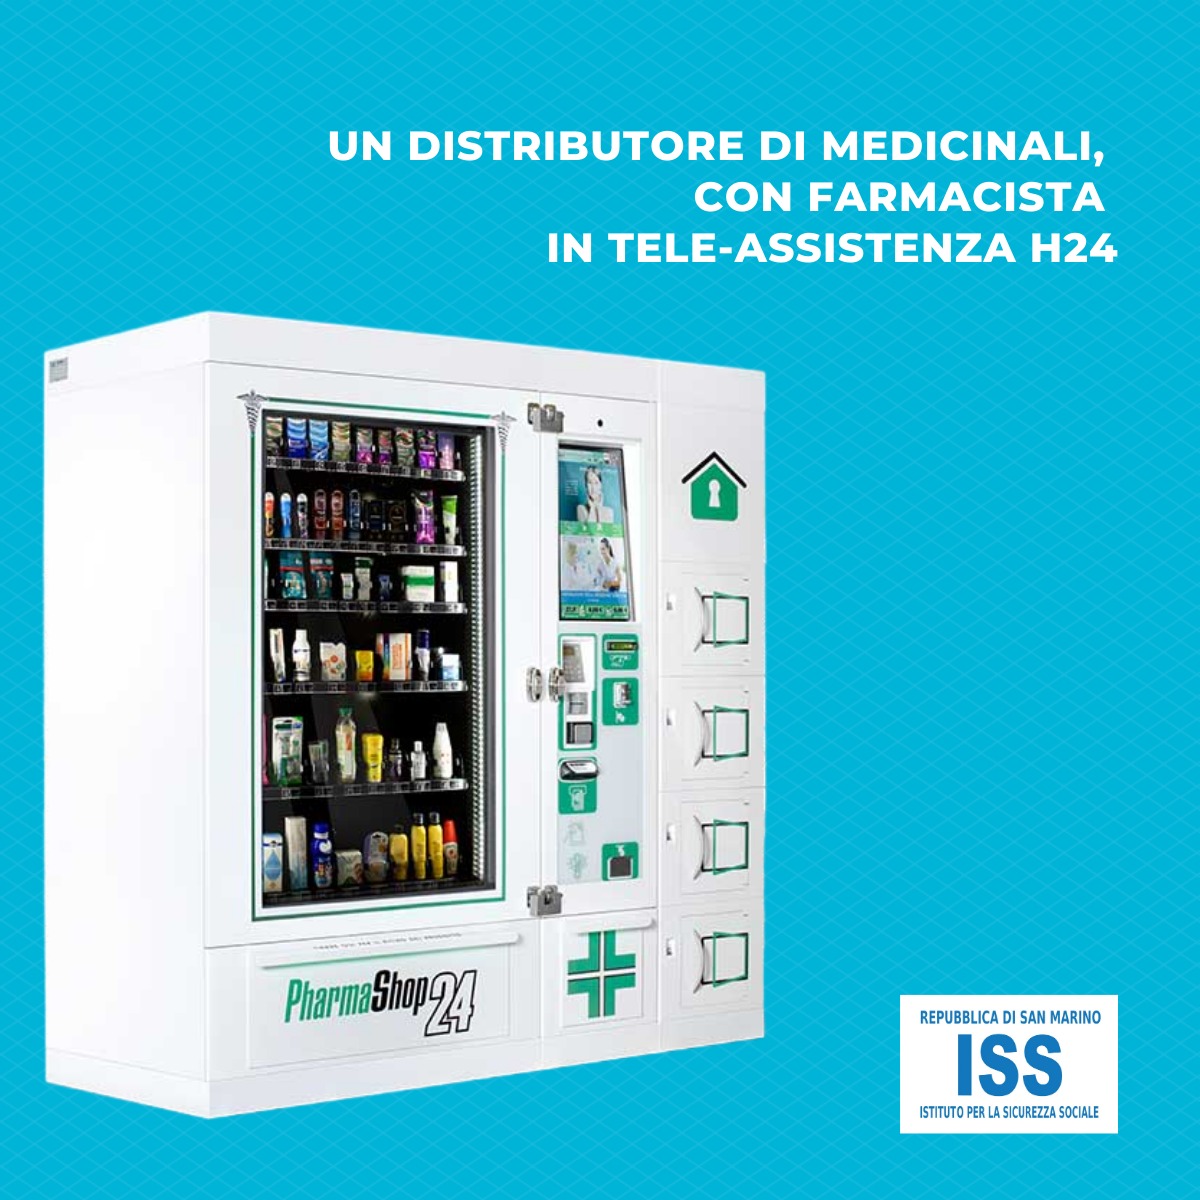 Un distributore di medicinali con farmacista in teleassistenza, attivo 24 ore su 24, nel Centro Storico di San Marino